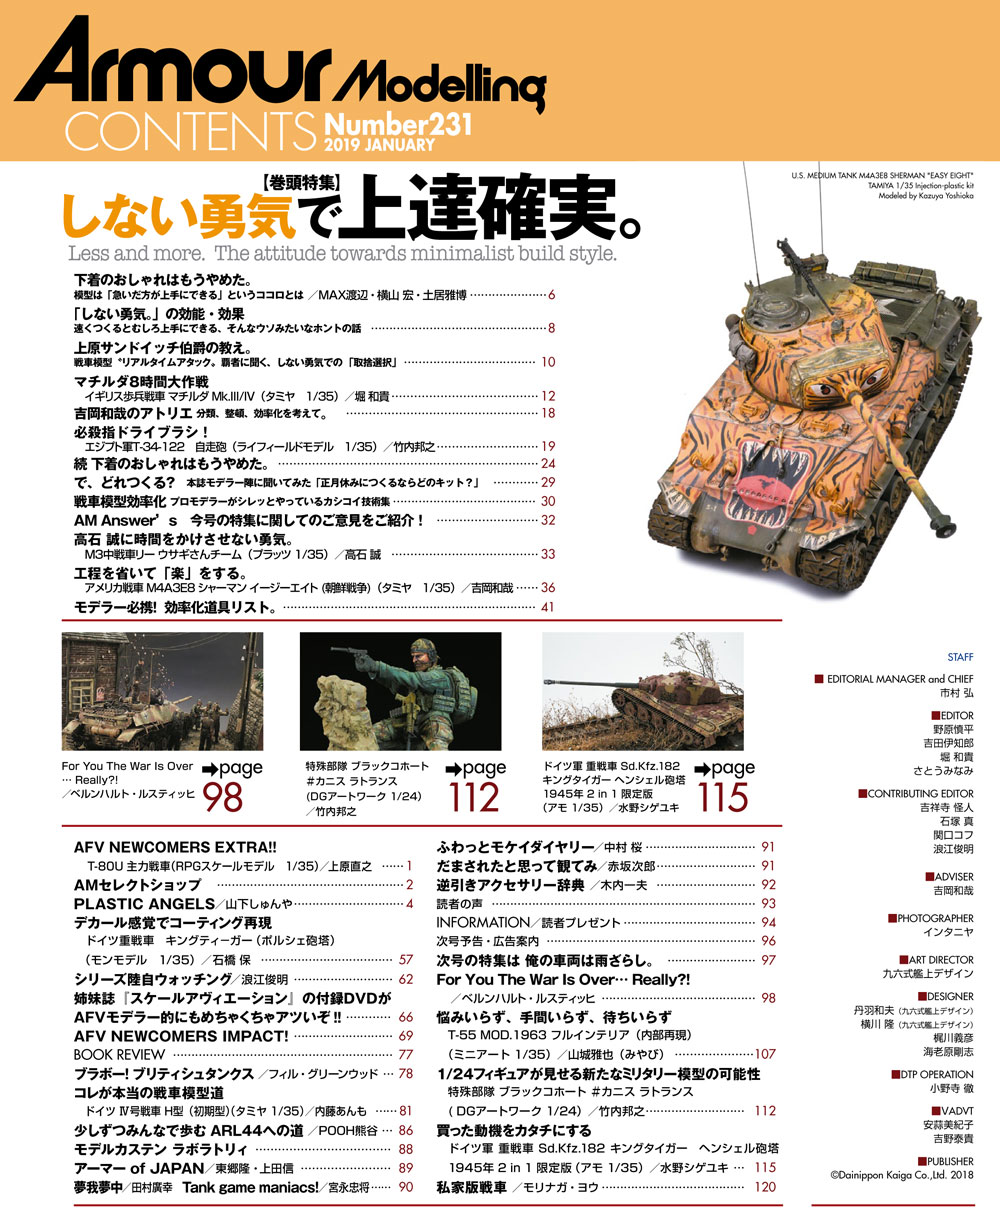 アーマーモデリング 2019年1月号 Vol.231 雑誌 (大日本絵画 Armour Modeling No.Vol.231) 商品画像_1